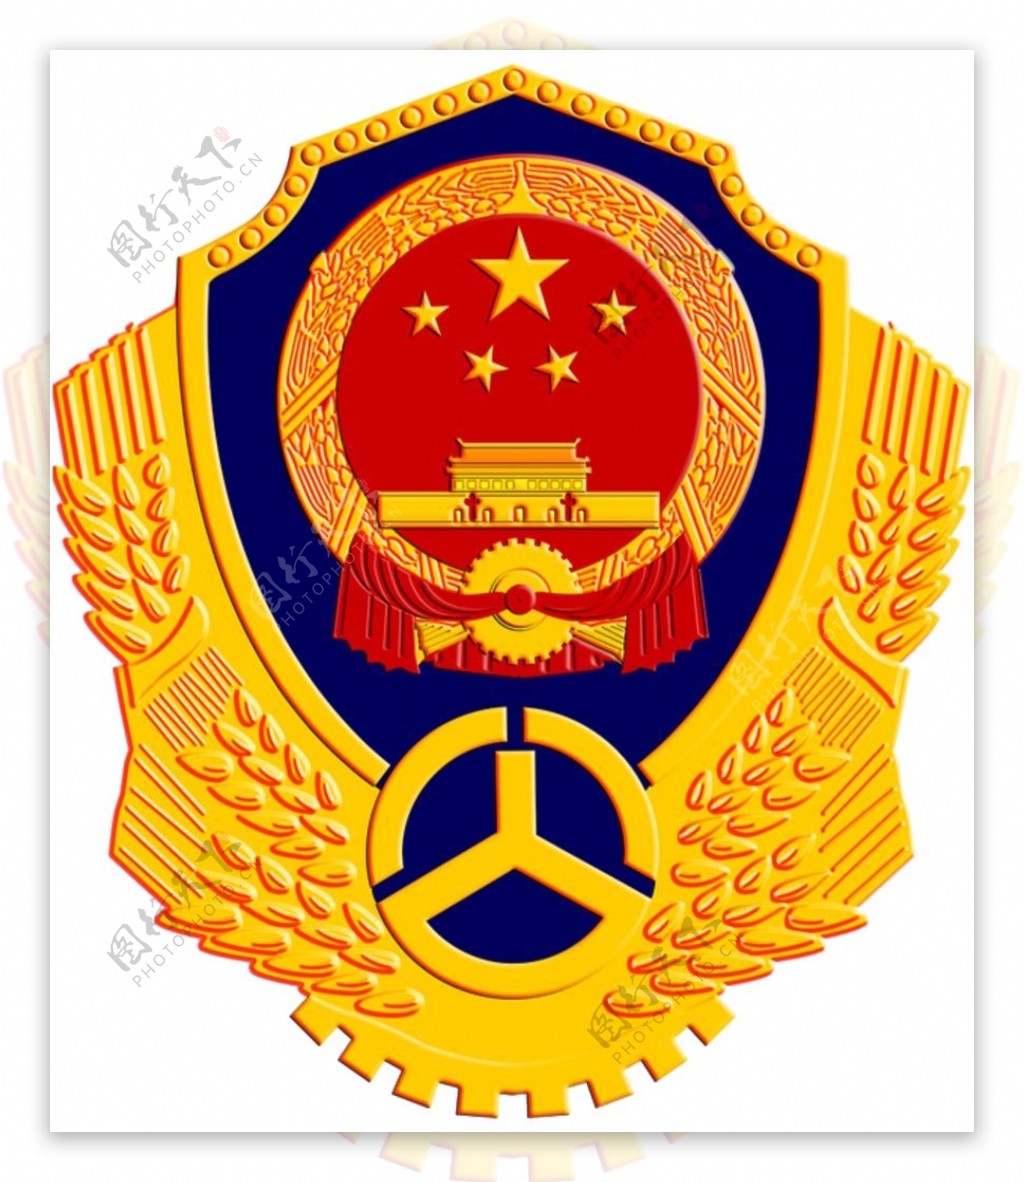 路政png图标logo